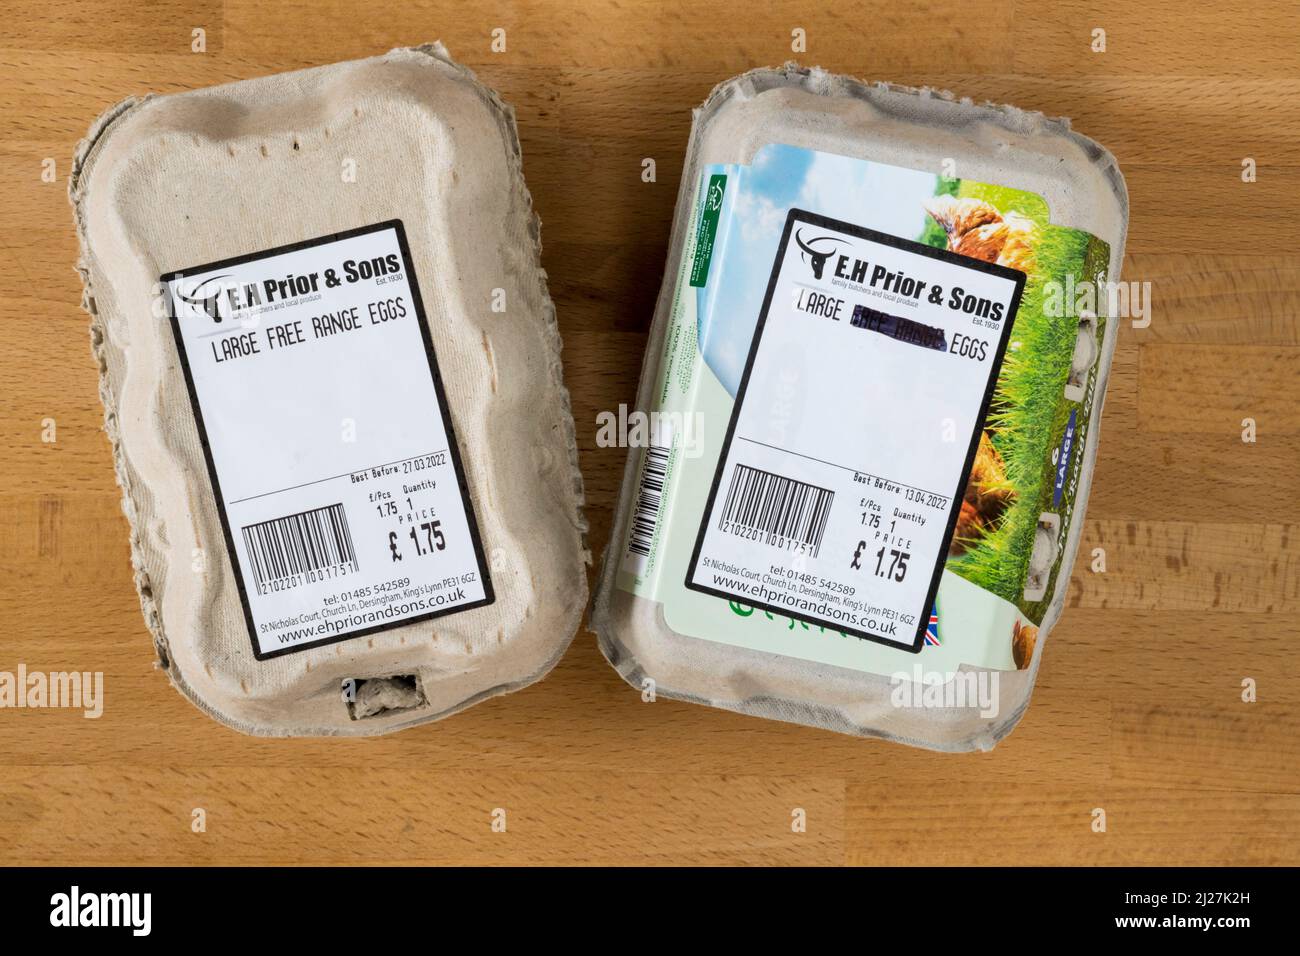 Le etichette della scatola delle uova sono state modificate dal negozio per mostrare che le uova non possono più essere descritte come a gamma libera mentre le galline alloggiavano all'interno durante l'epidemia di influenza aviaria del 2022 Foto Stock